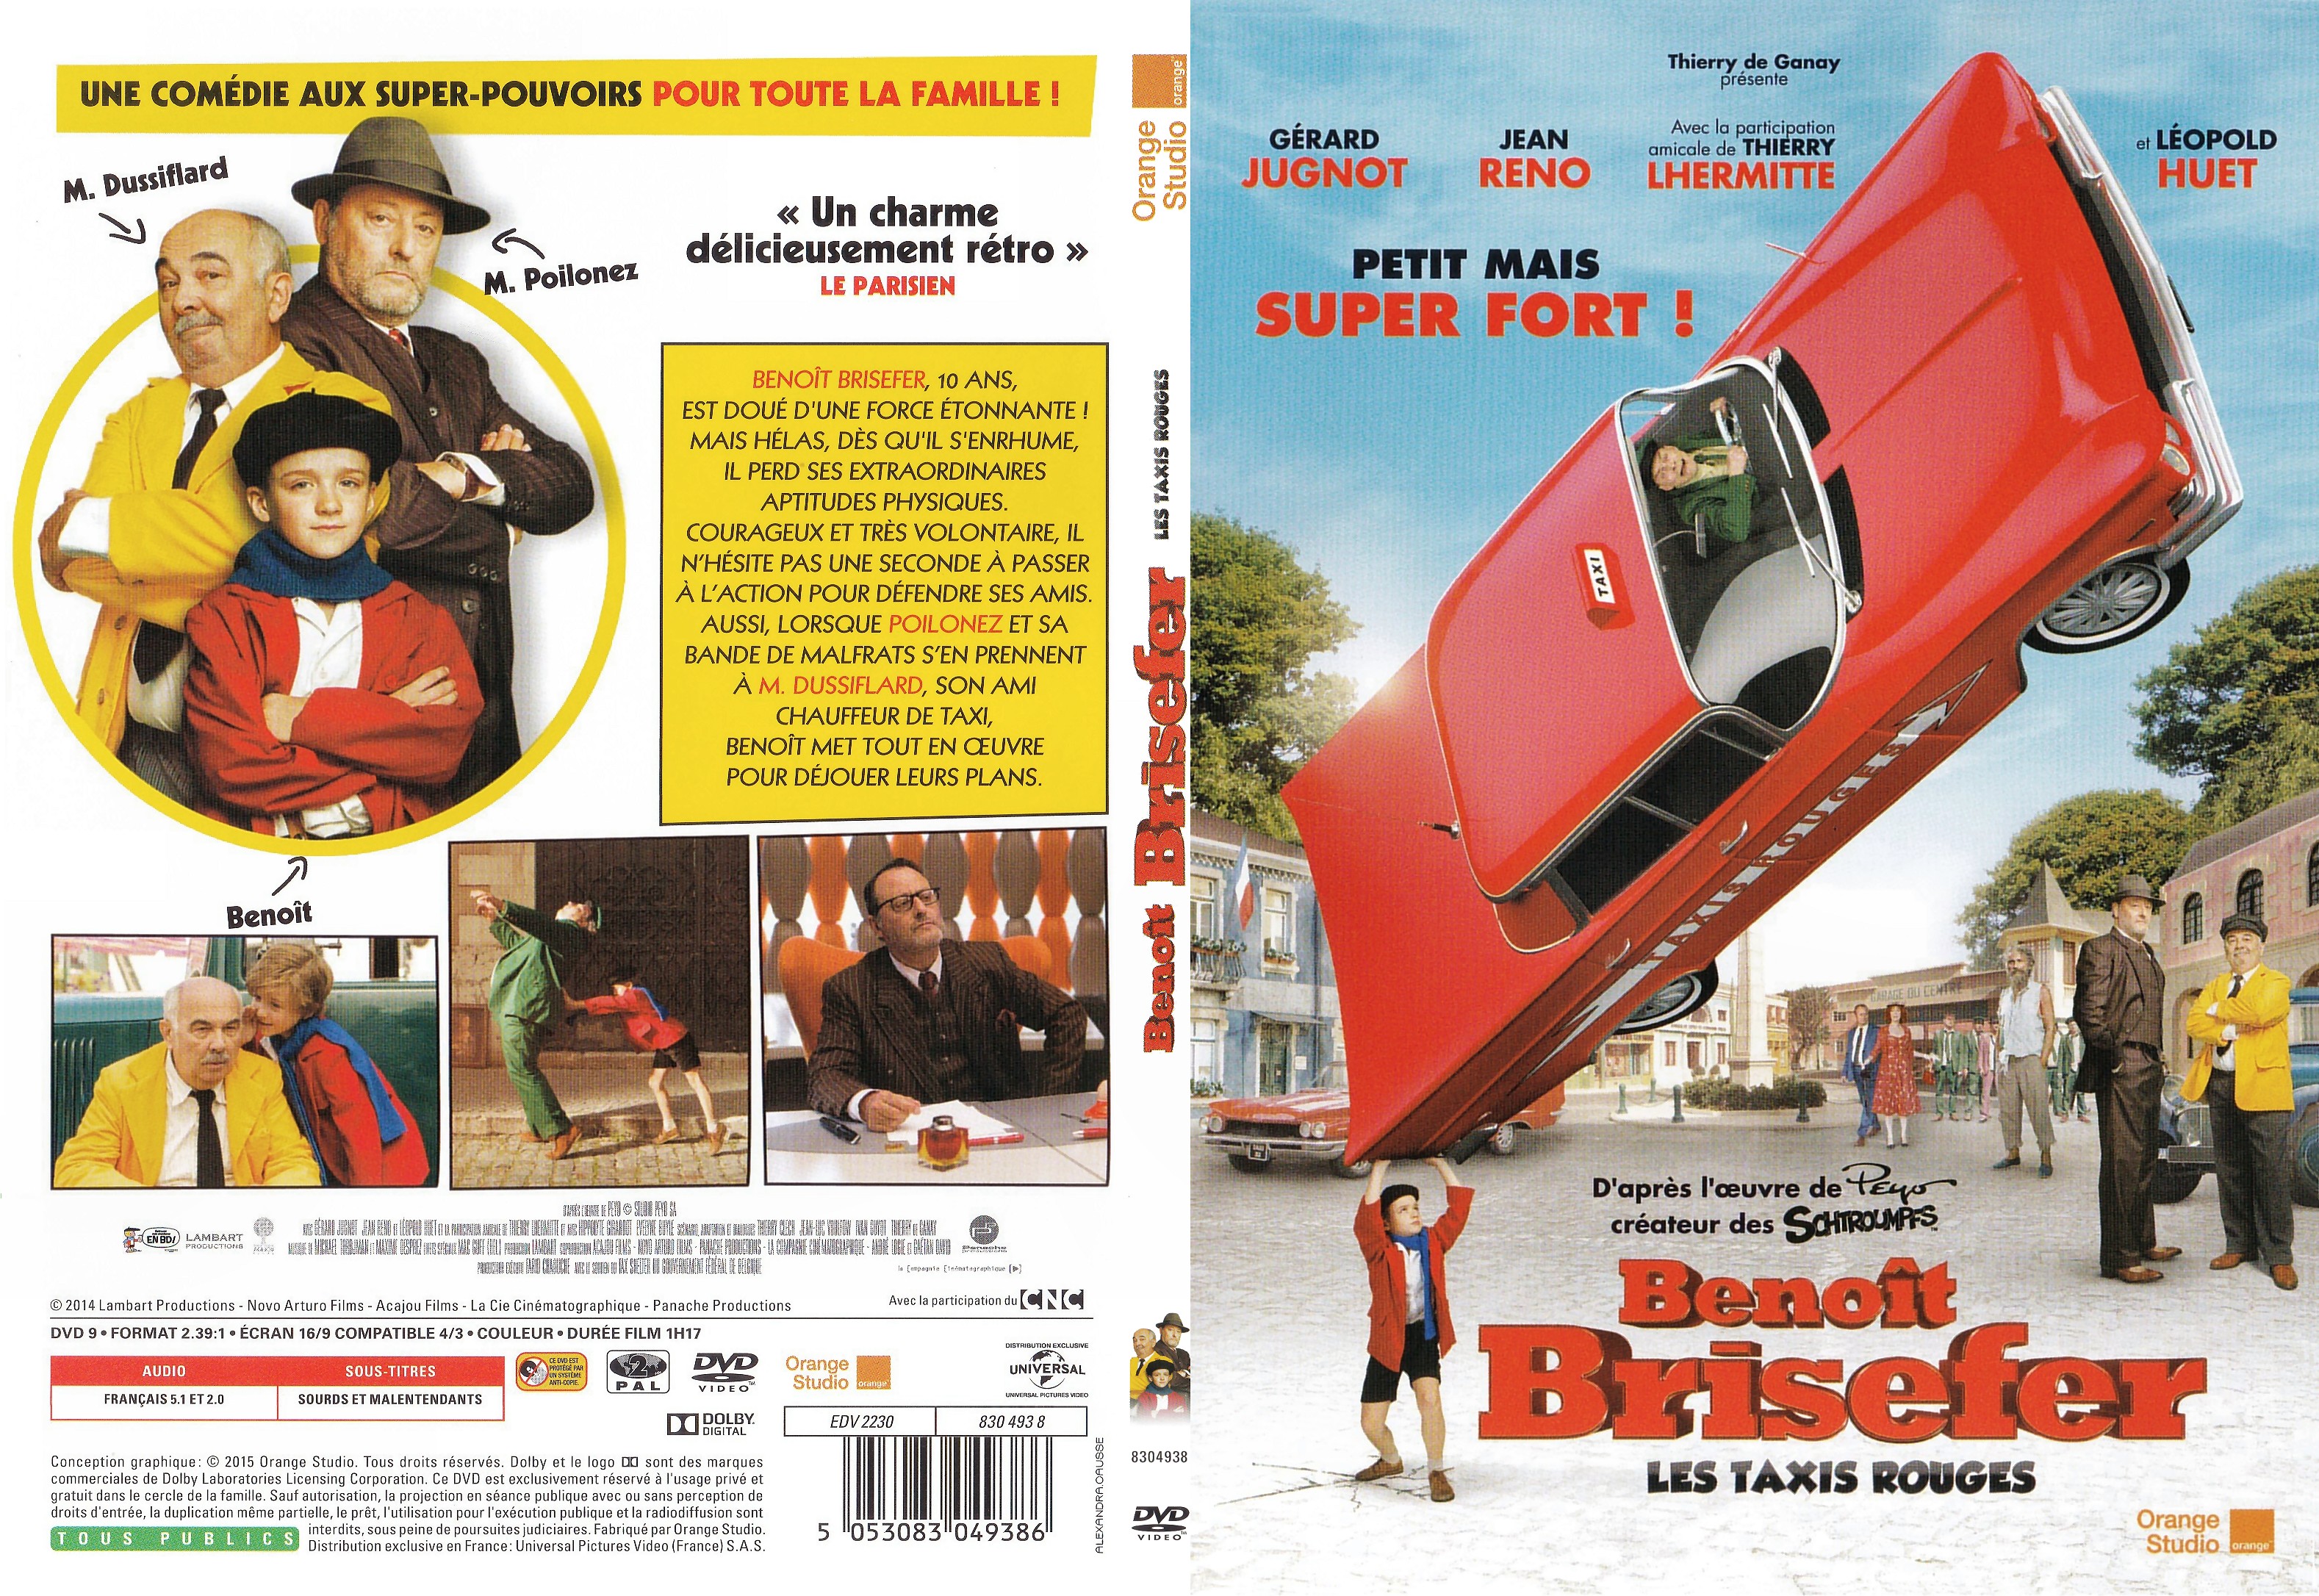 Jaquette DVD Benot Brisefer : les Taxis Rouges - SLIM